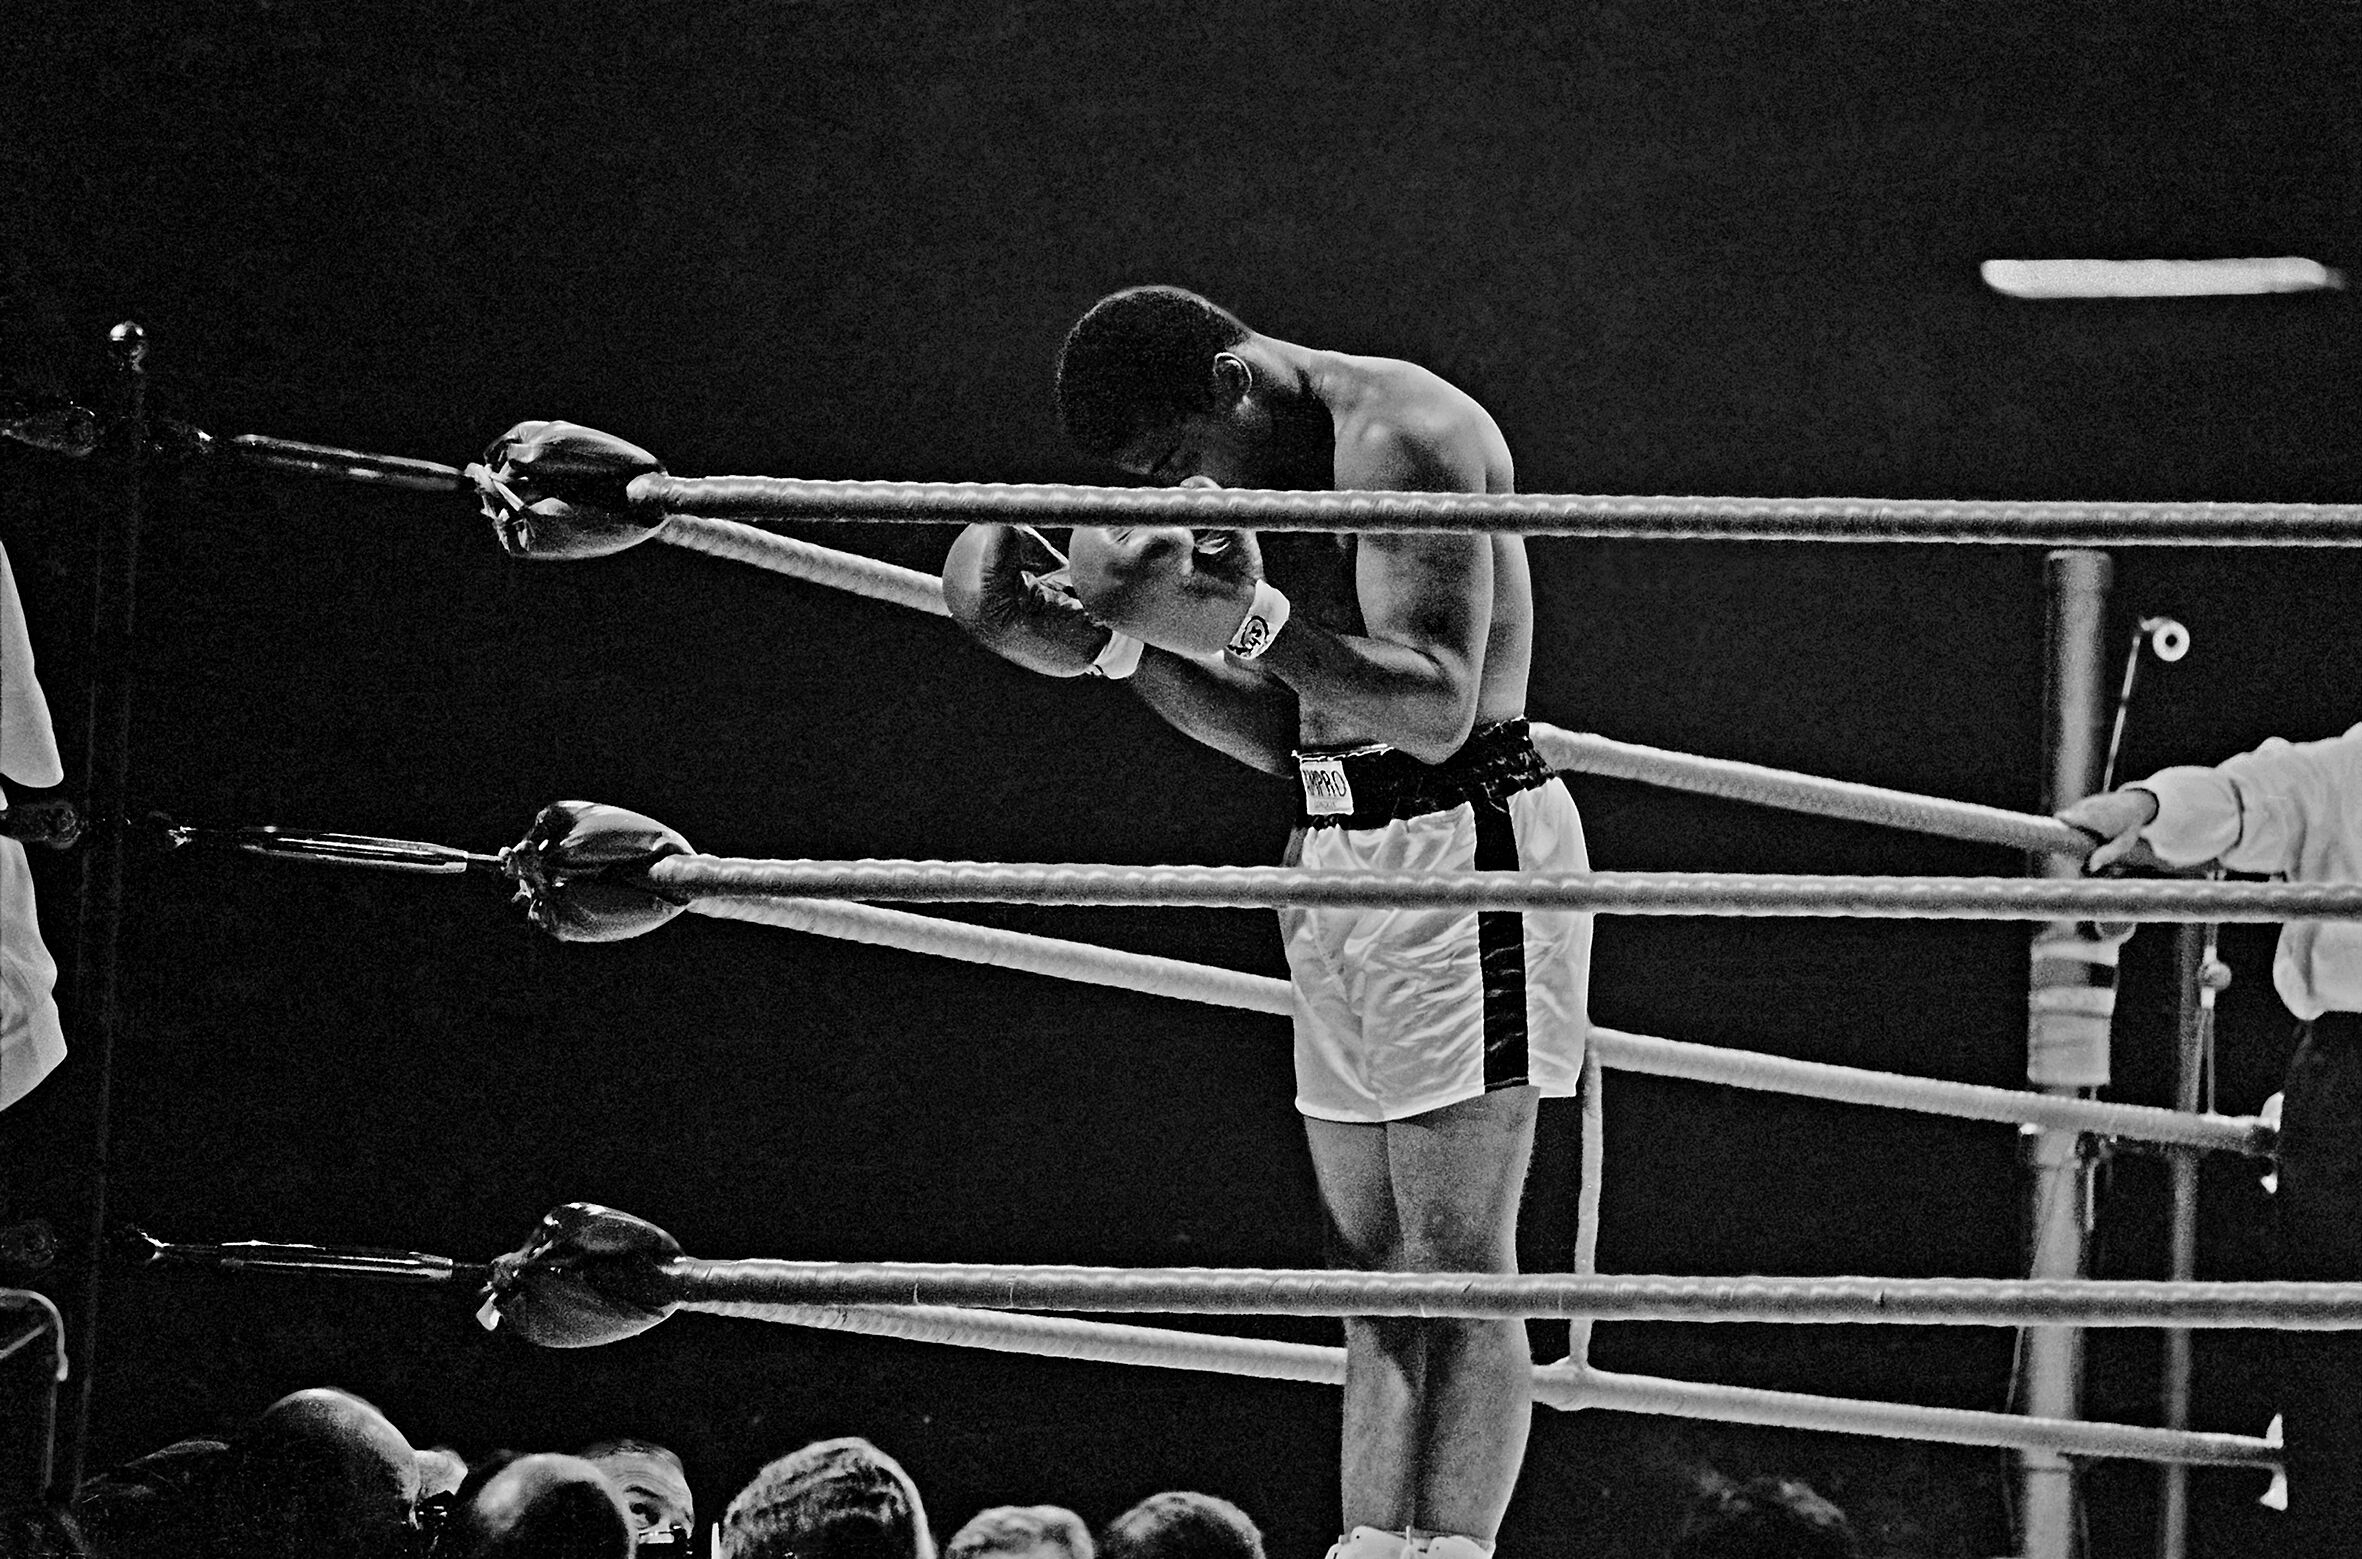 Exposição sobre Muhammad Ali com fotos de Thomas Hoepker chega ao